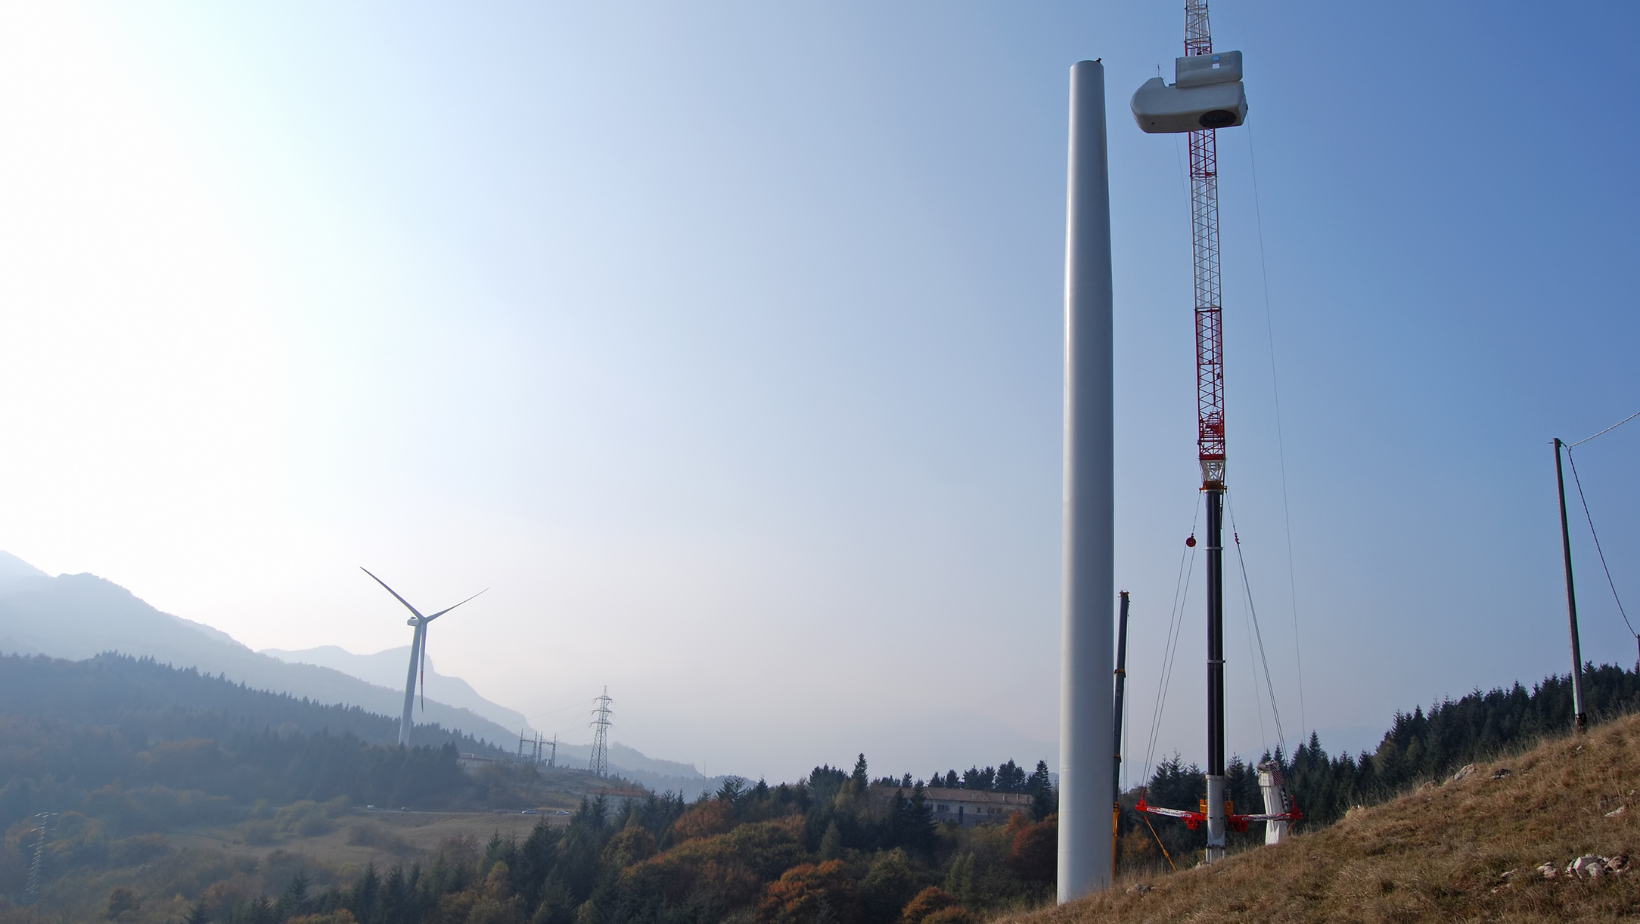 Eine Windenergieanlage im Bau mit Kran in der Natur, vor Bergen mit herbstlicher Bewaldung.